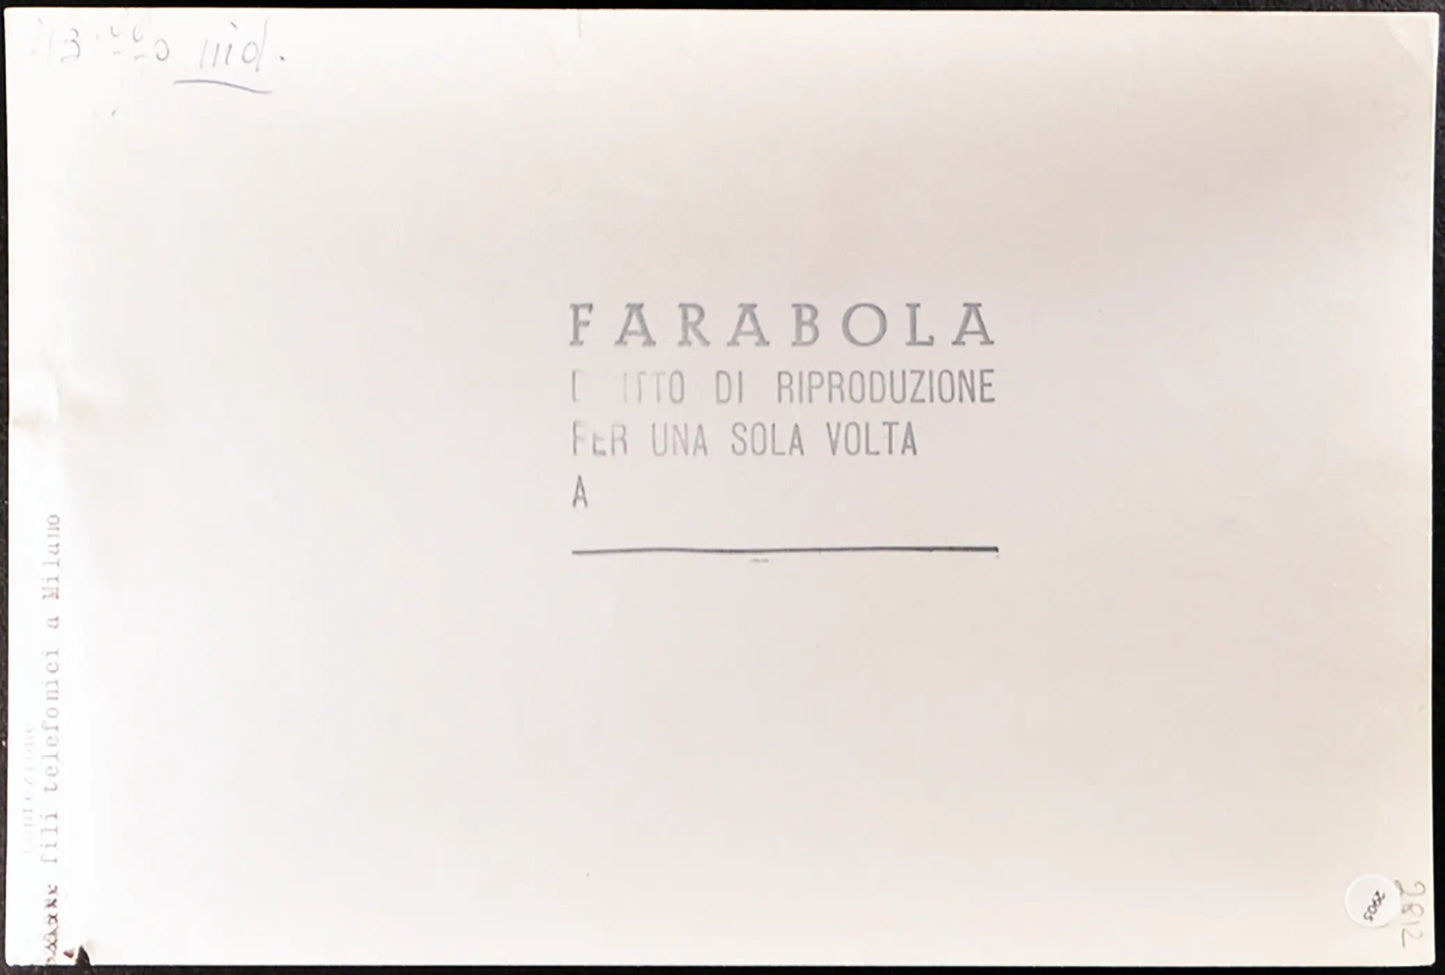 Confezione fili telefonici anni 50 Ft 2905 - Stampa 21x27 cm - Farabola Stampa ai sali d'argento